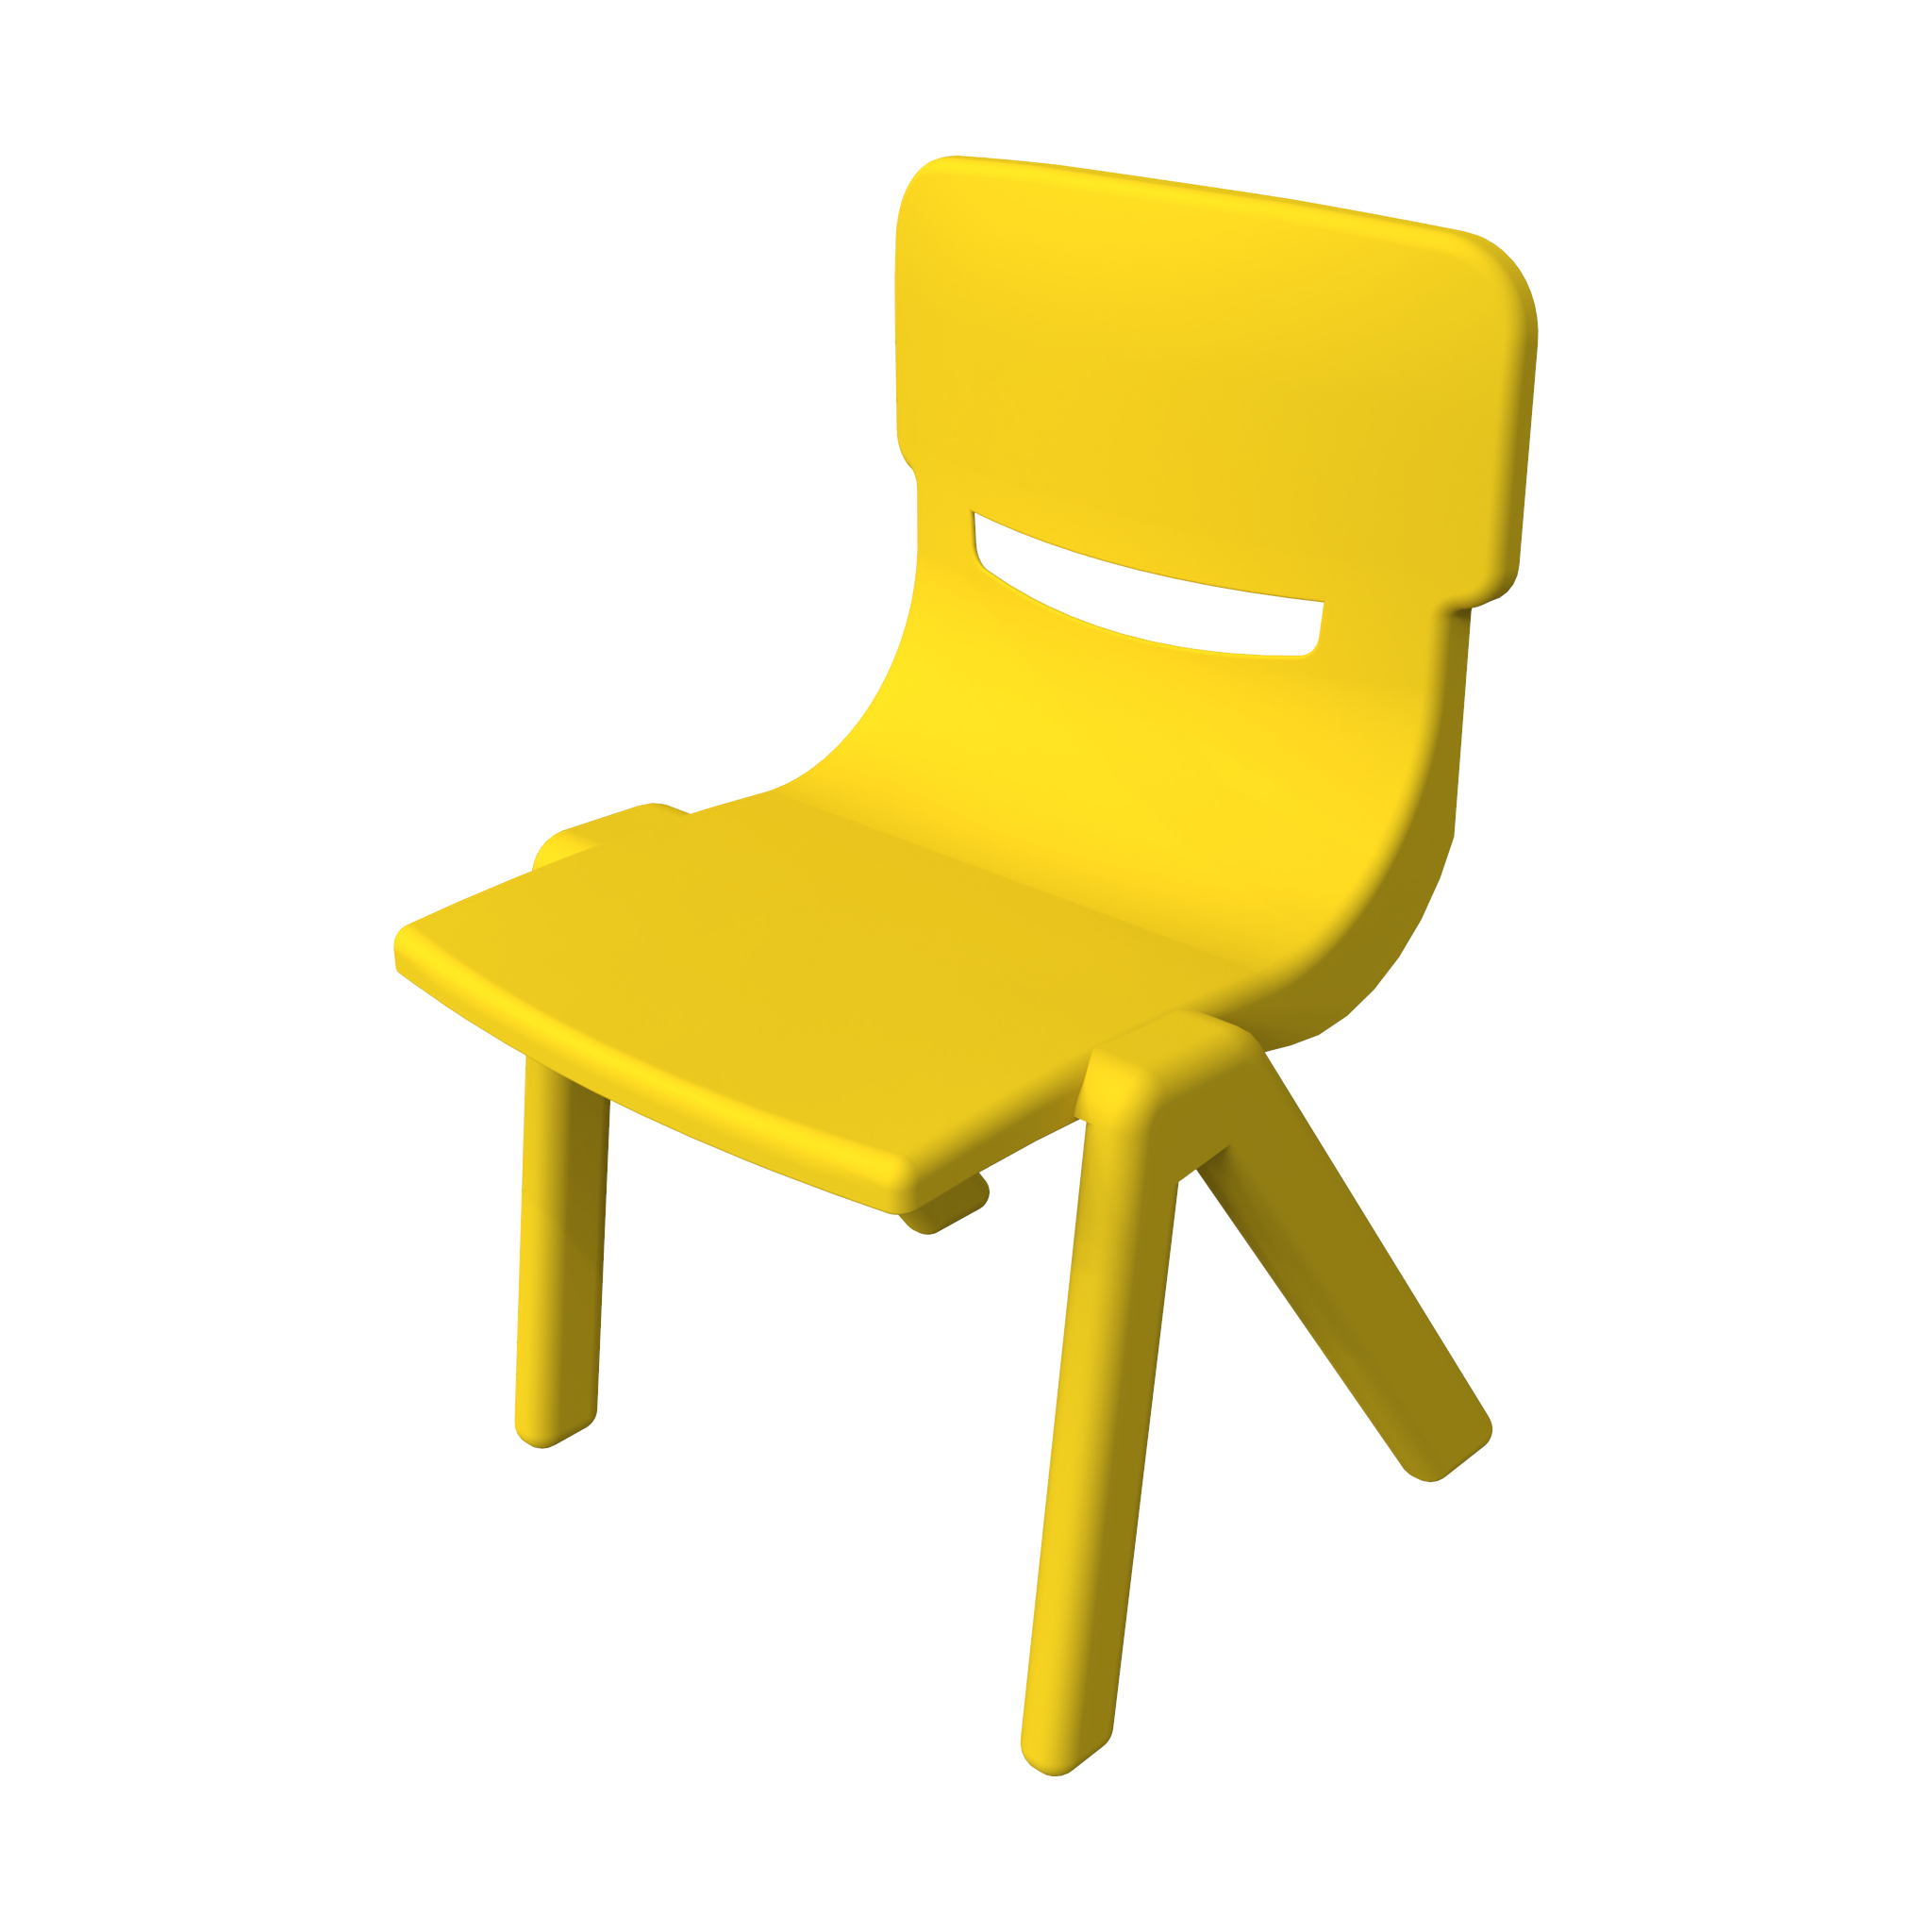 Quest'imagine mostra Mobili per bambini Fun chair yellow